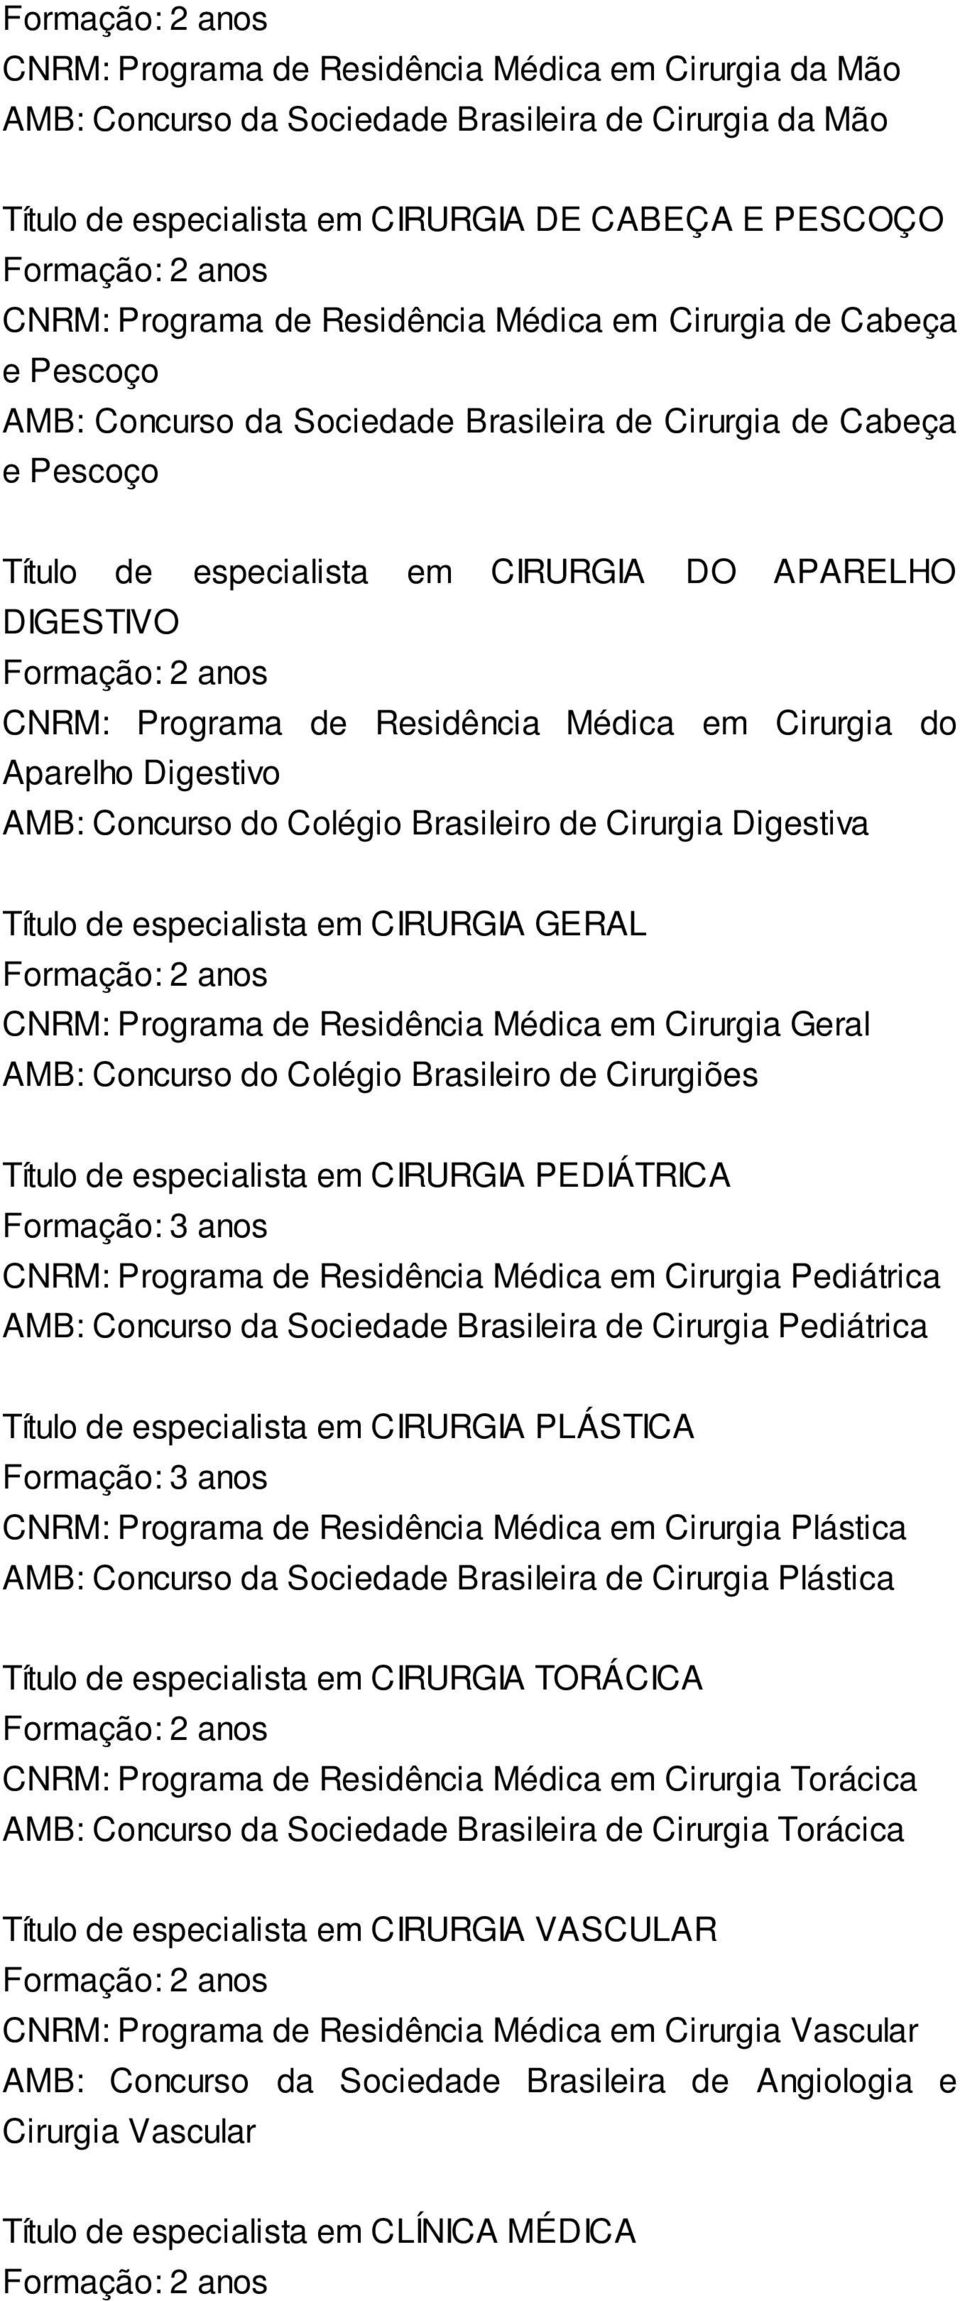 Médica em Cirurgia do Aparelho Digestivo AMB: Concurso do Colégio Brasileiro de Cirurgia Digestiva Título de especialista em CIRURGIA GERAL CNRM: Programa de Residência Médica em Cirurgia Geral AMB: